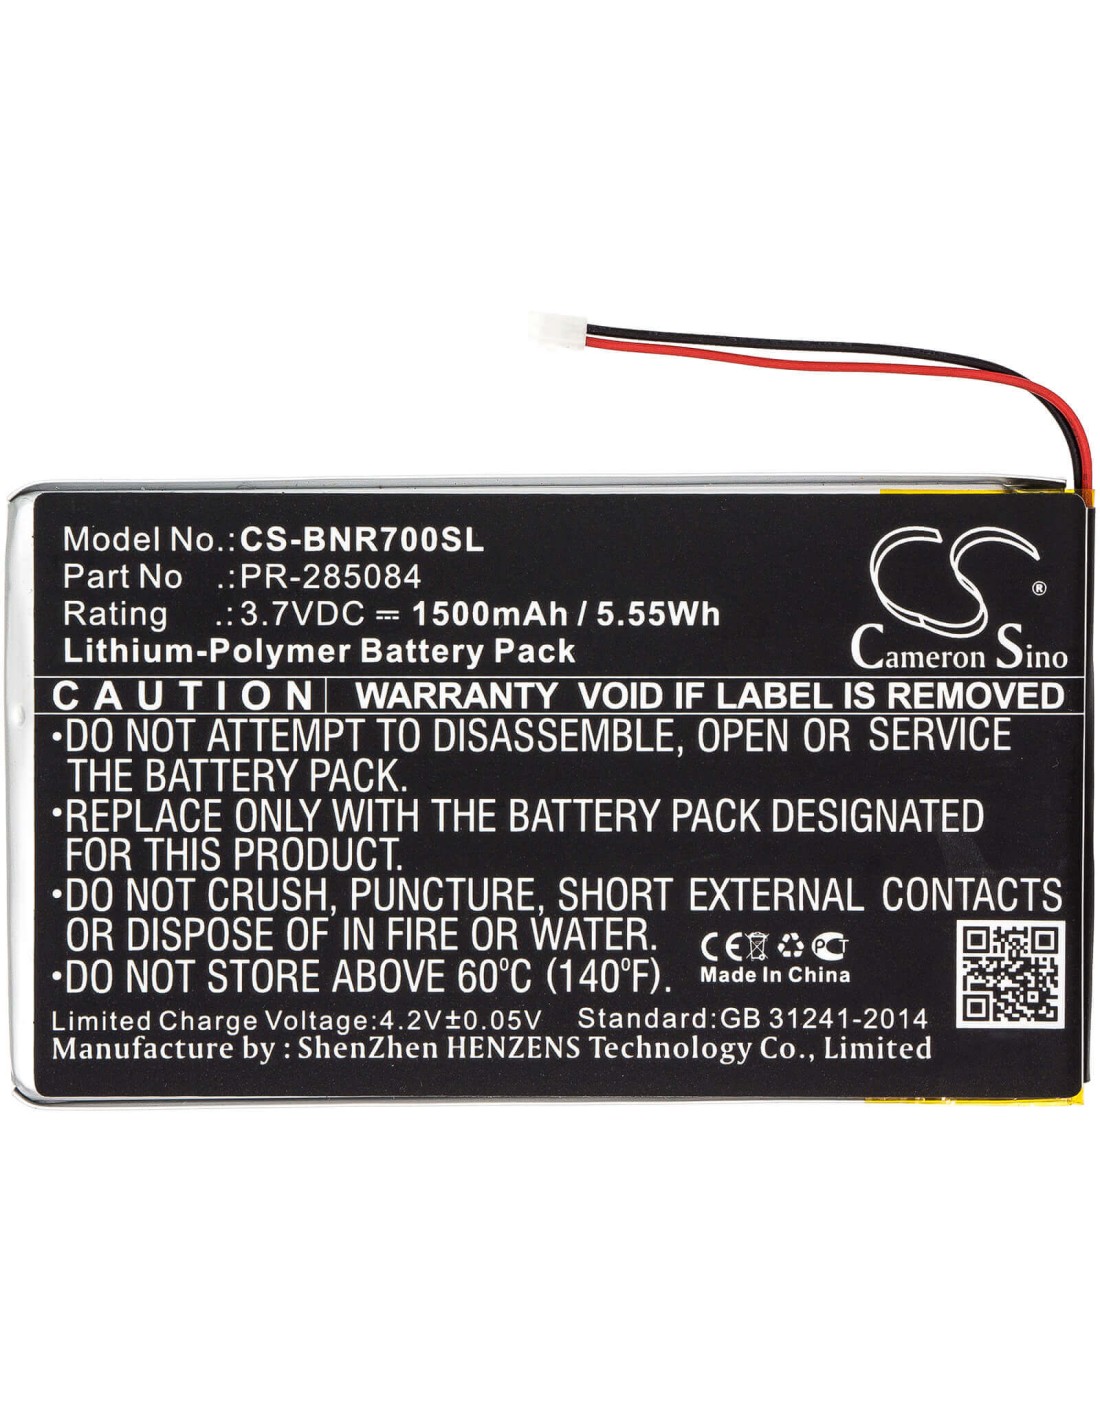 Battery for Barnes & Noble, Bnrv700, Glowlight Plus 7.8 3.7V, 1500mAh - 5.55Wh